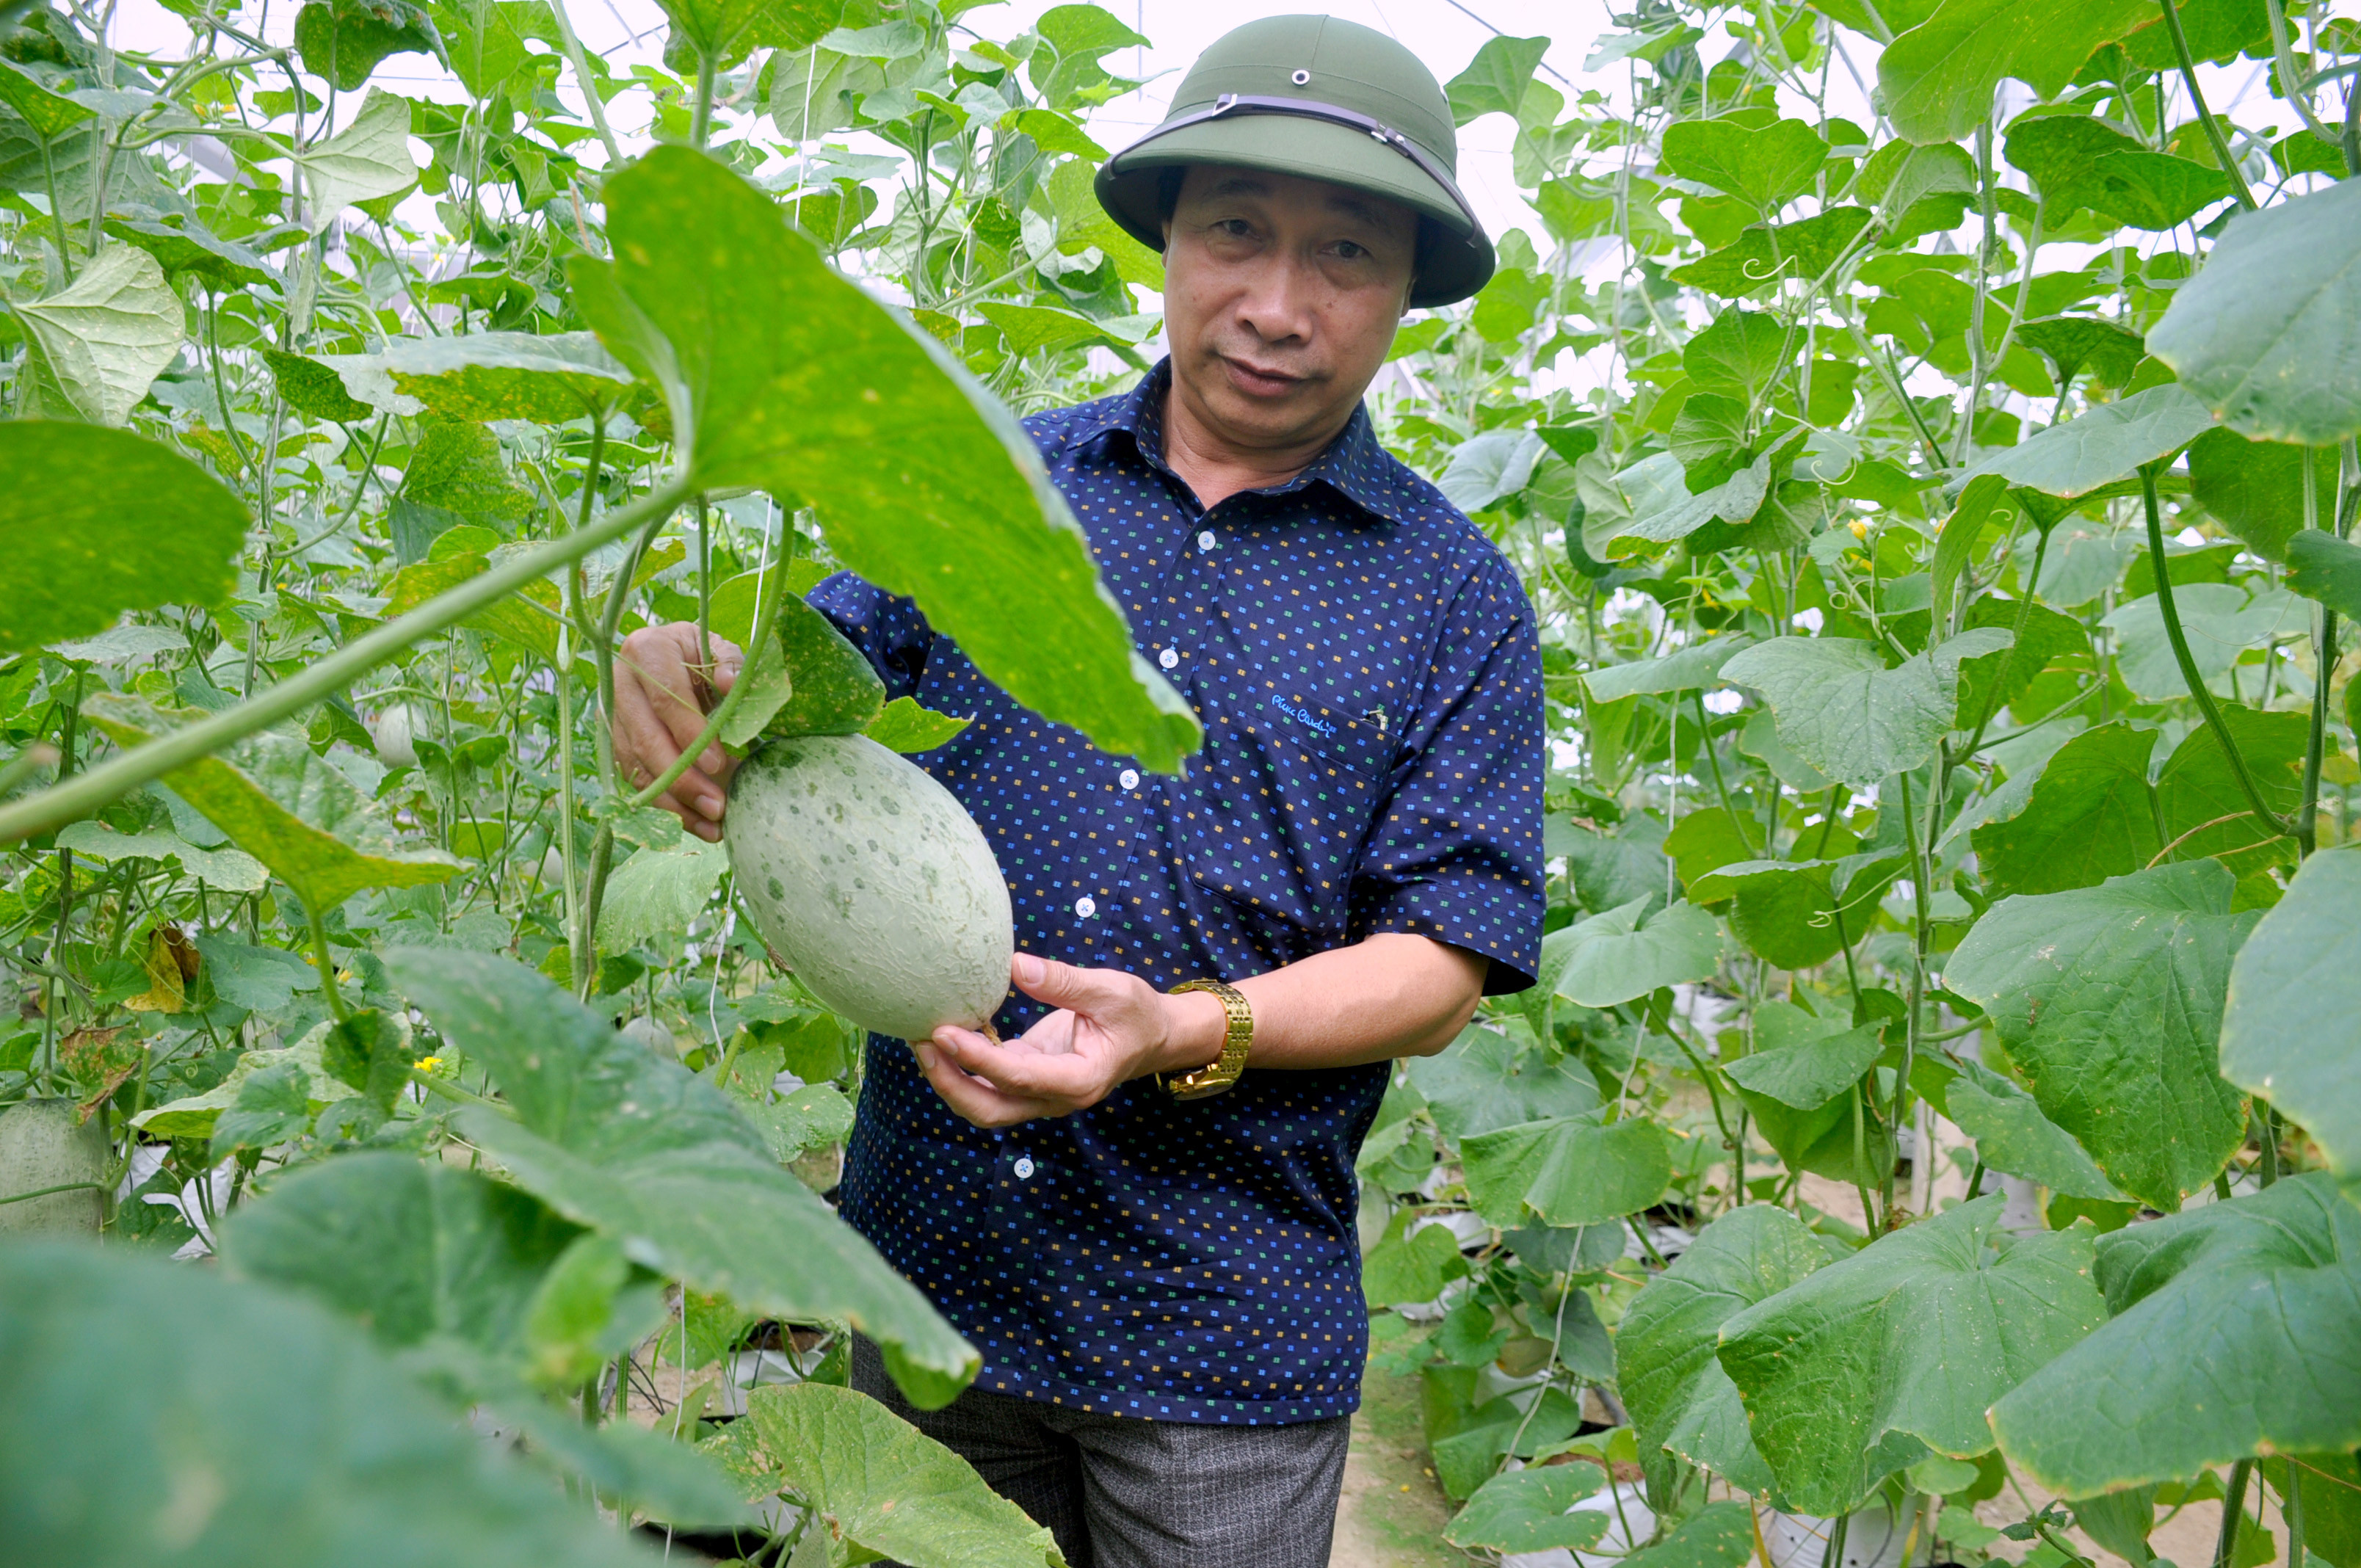 Phó giám đốc Sở NN&PTNT kiểm tra mô hình trồng dưa lưới trong nhà màng theo công nghệ Isarel ở Hội Sơn, Anh Sơn. Ảnh Thu Huyền 